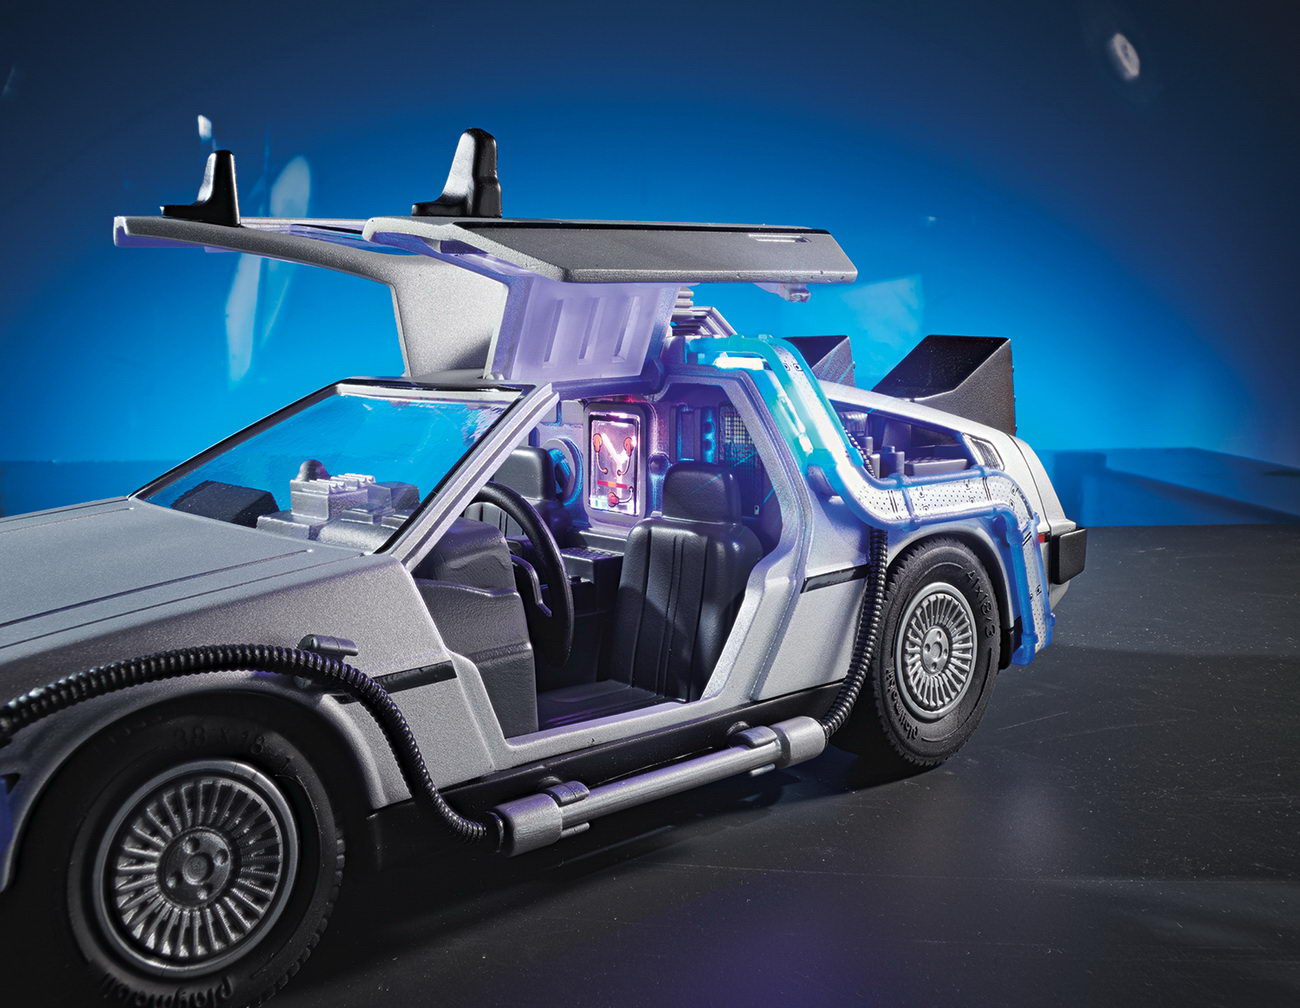 Playmobil 70317 - DeLorean - Back to the Future